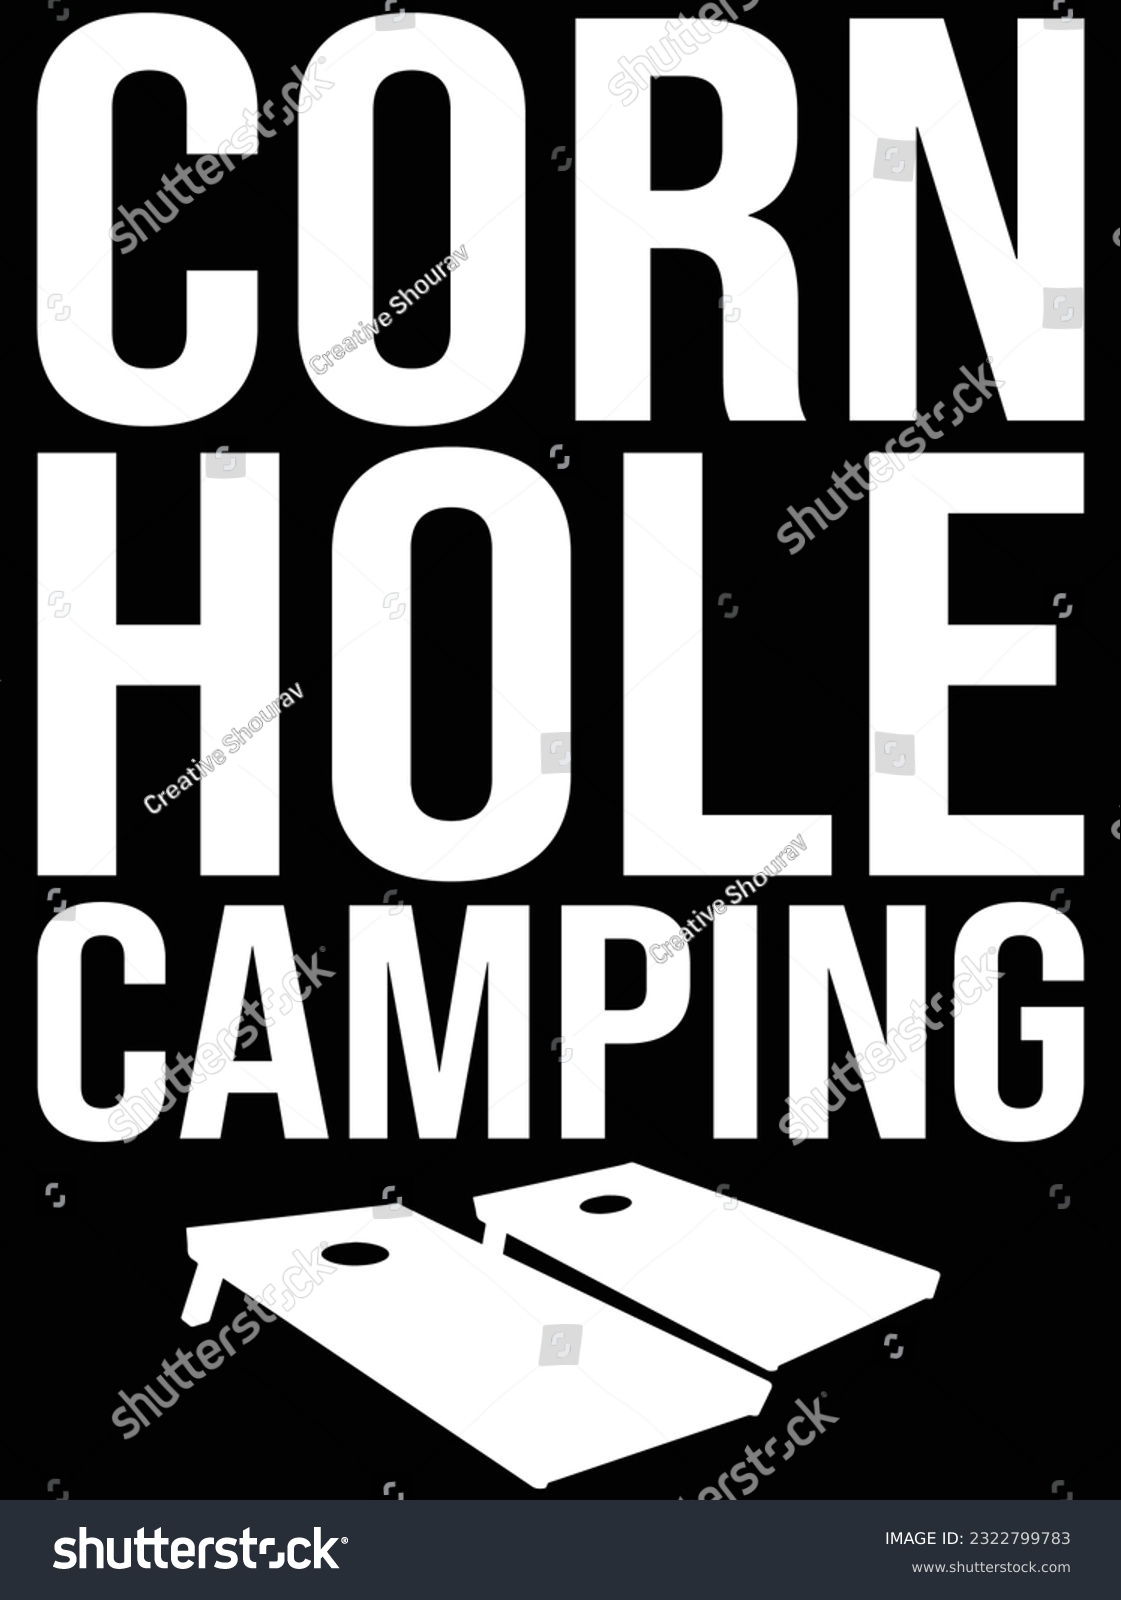 SVG of Cornhole camping vector art design, eps file. design file for t-shirt. SVG, EPS cuttable design file svg